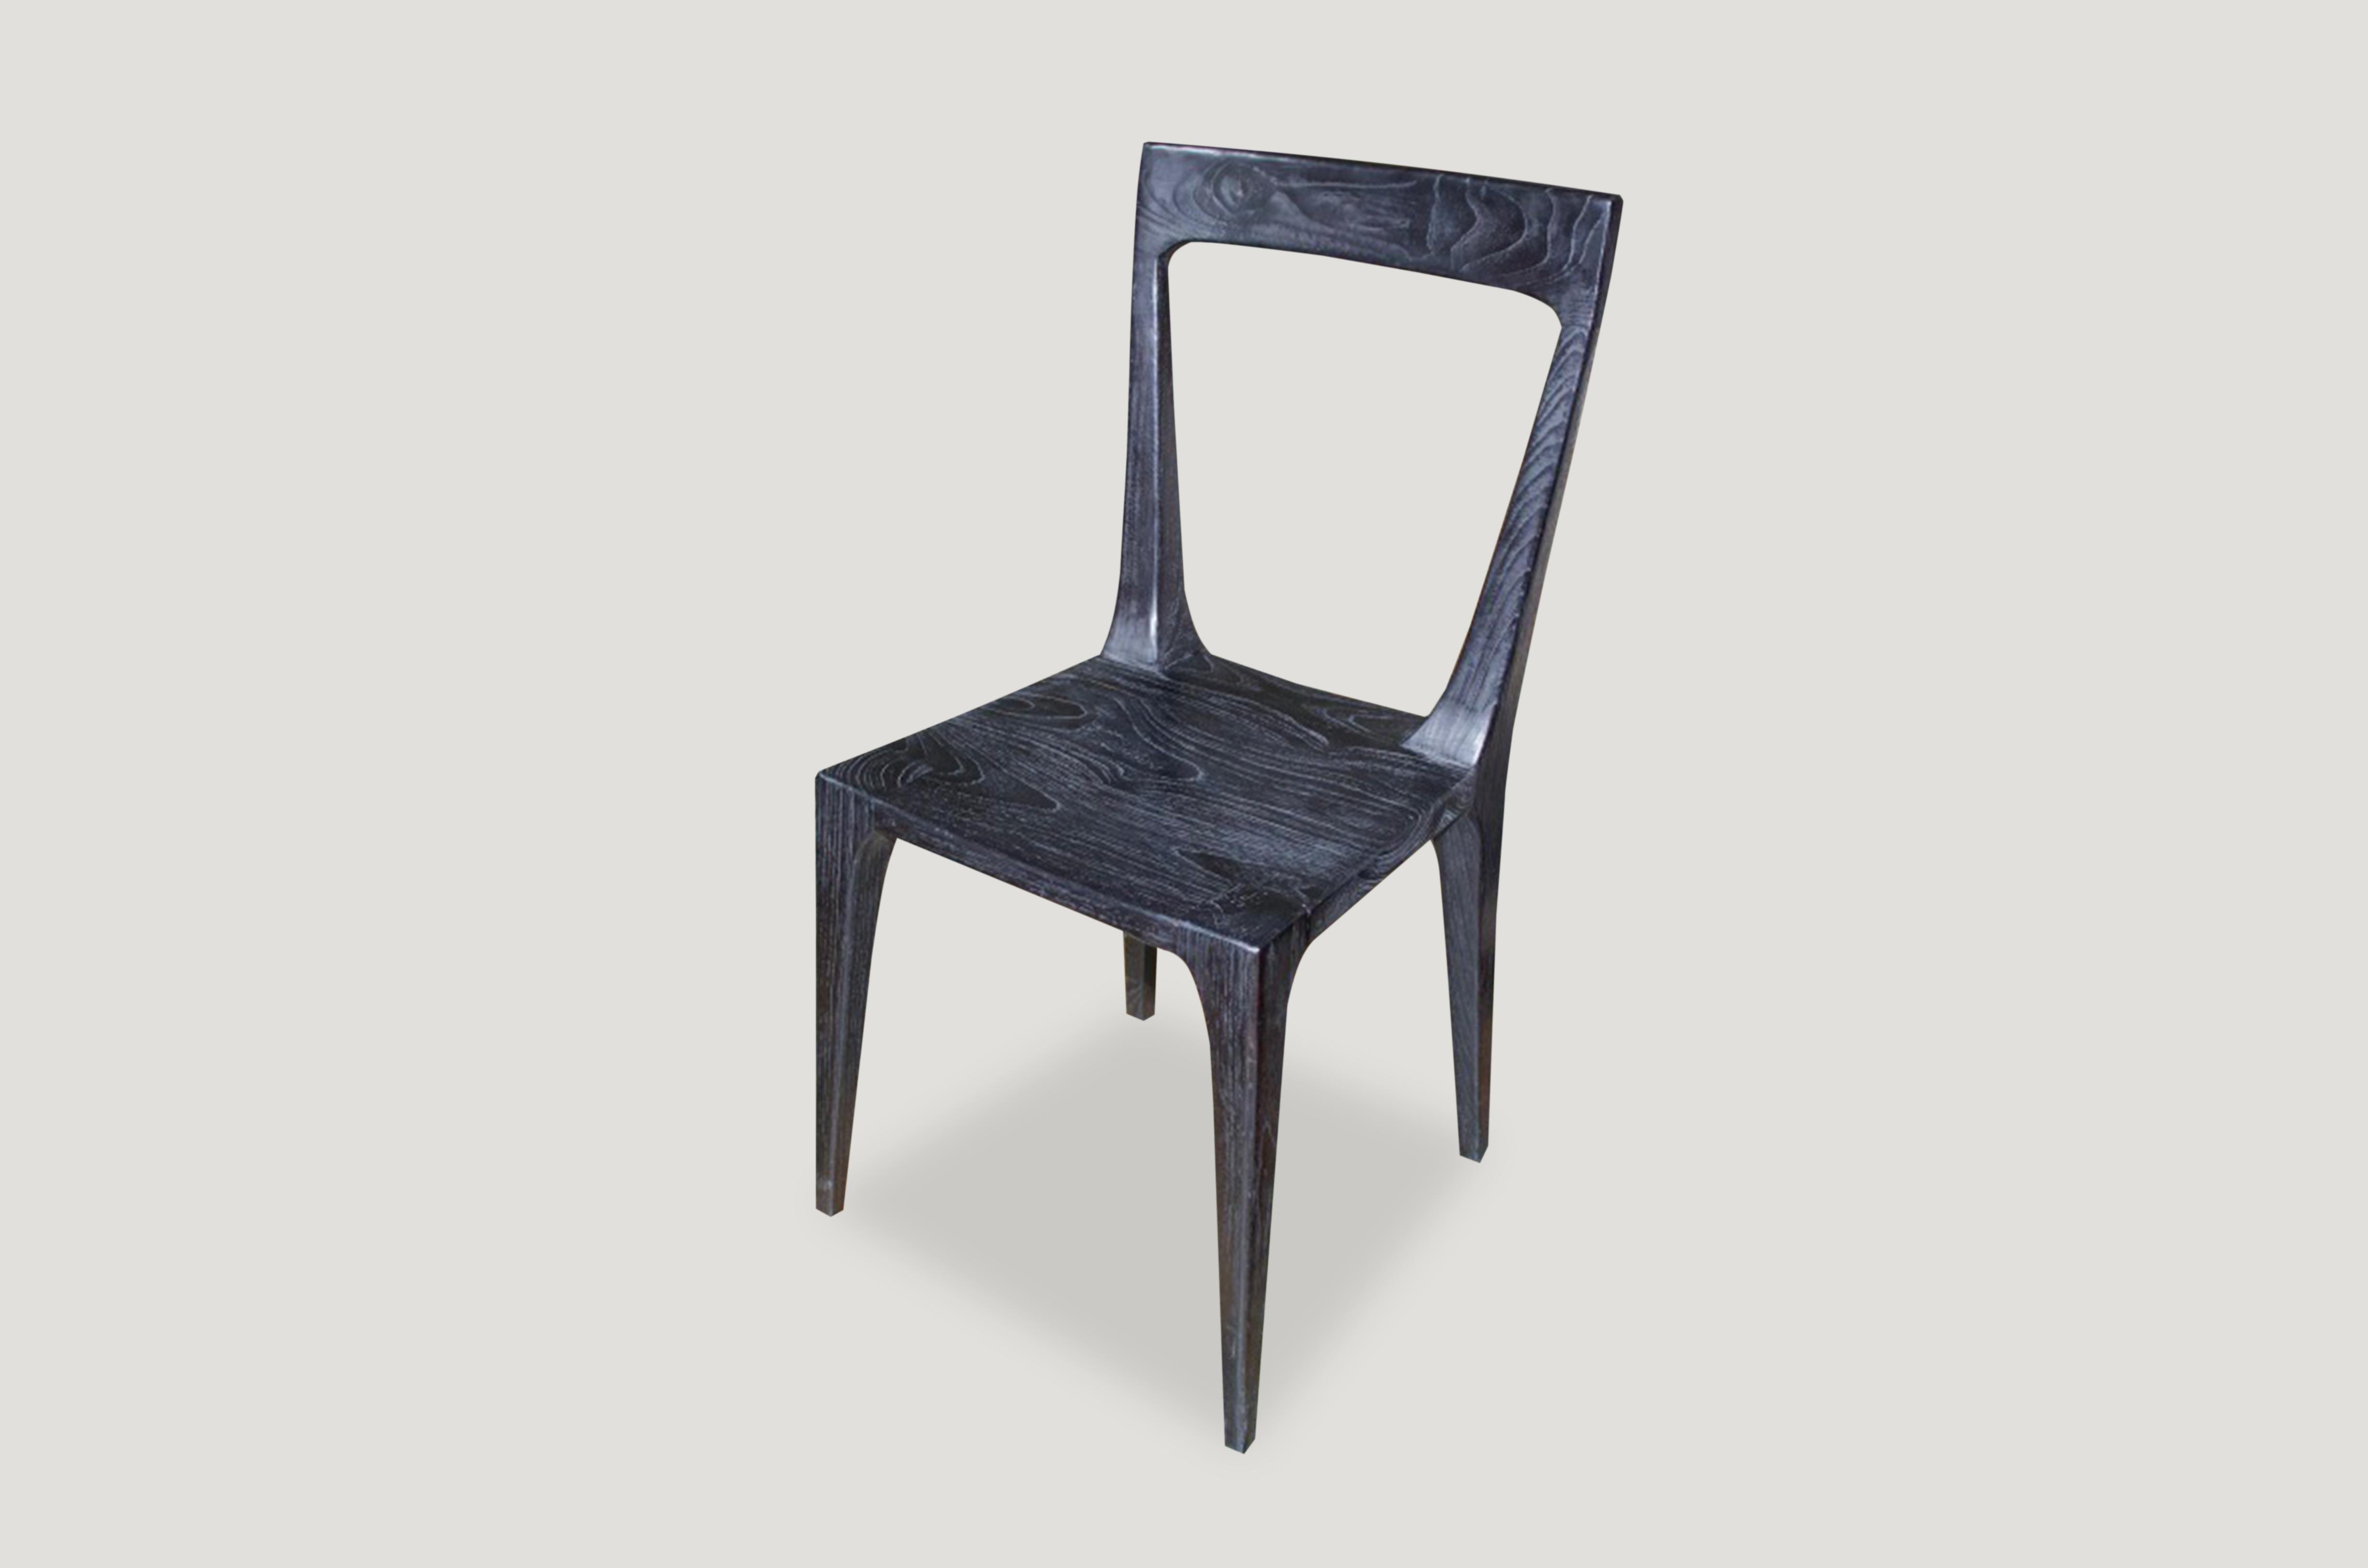 Minimalistischer Stuhl, handgeschnitzt aus wiederverwendetem Teakholz. Gebrannt, geschliffen und versiegelt mit einer glatten Oberfläche. 15-17